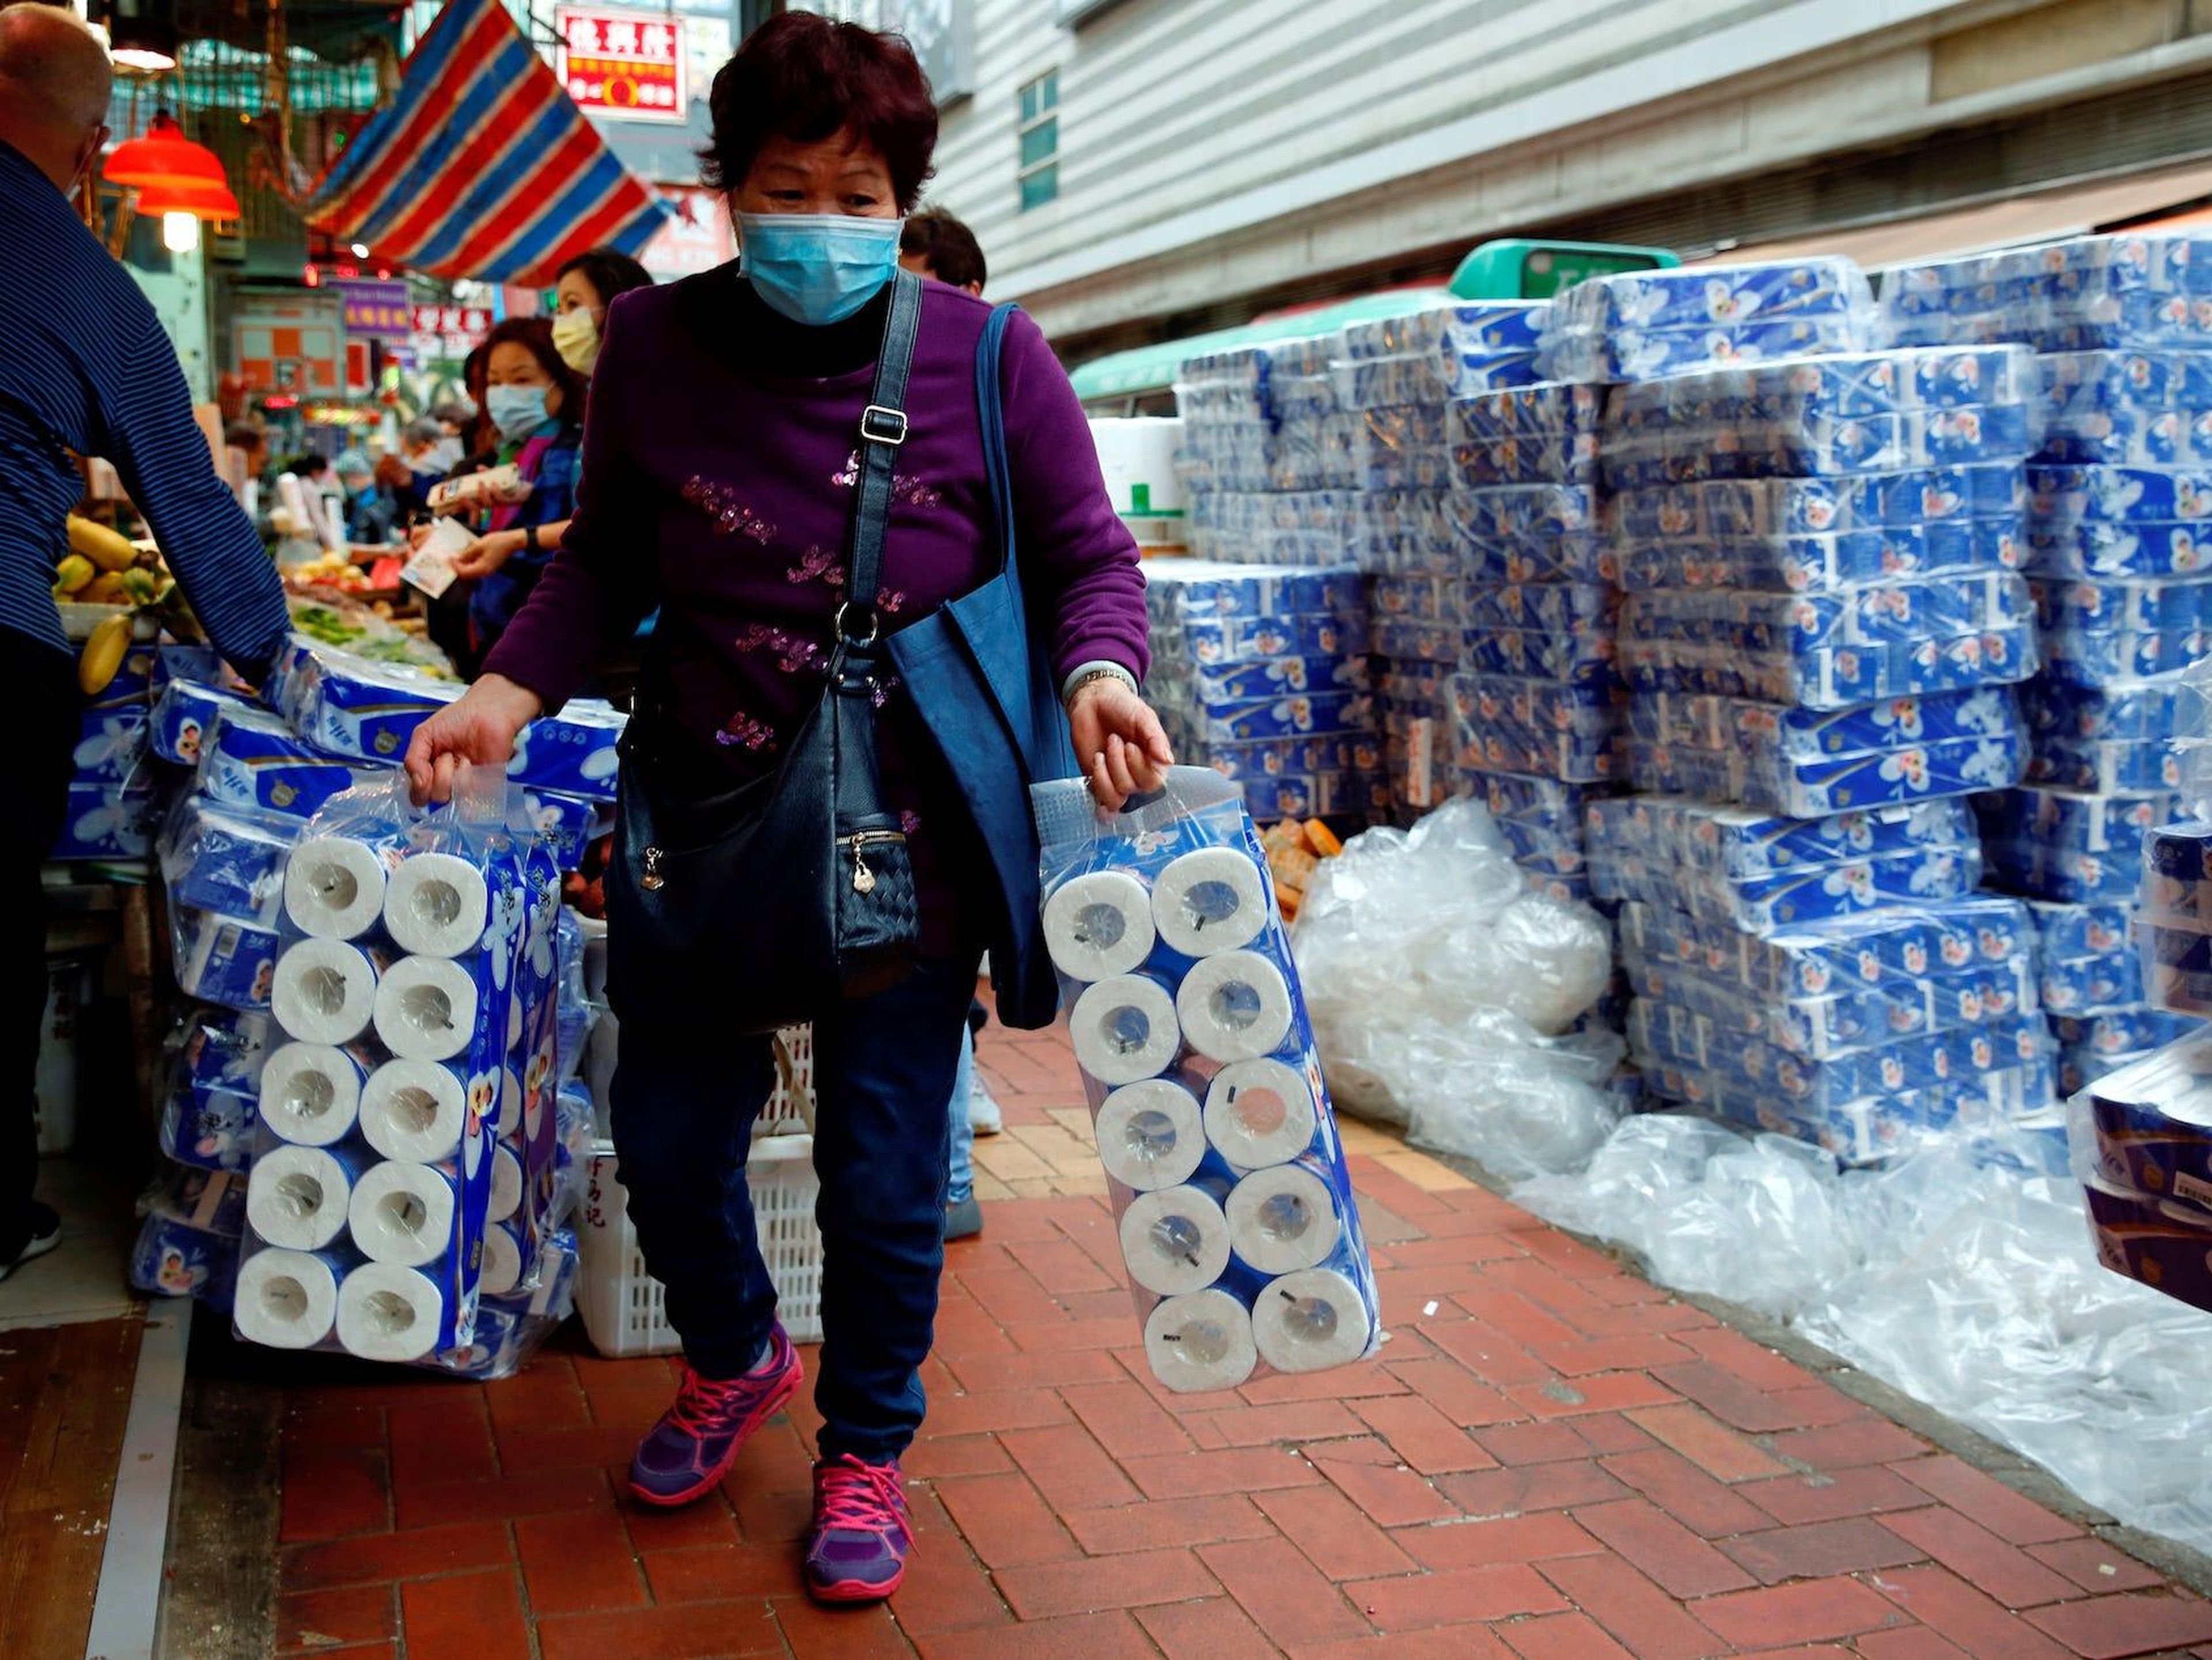 Foto de archivo de un cliente recogiendo rollos de papel higiénico en un mercado de Hong Kong el 8 de febrero de 2020. No relacionado con el robo a mano armada.